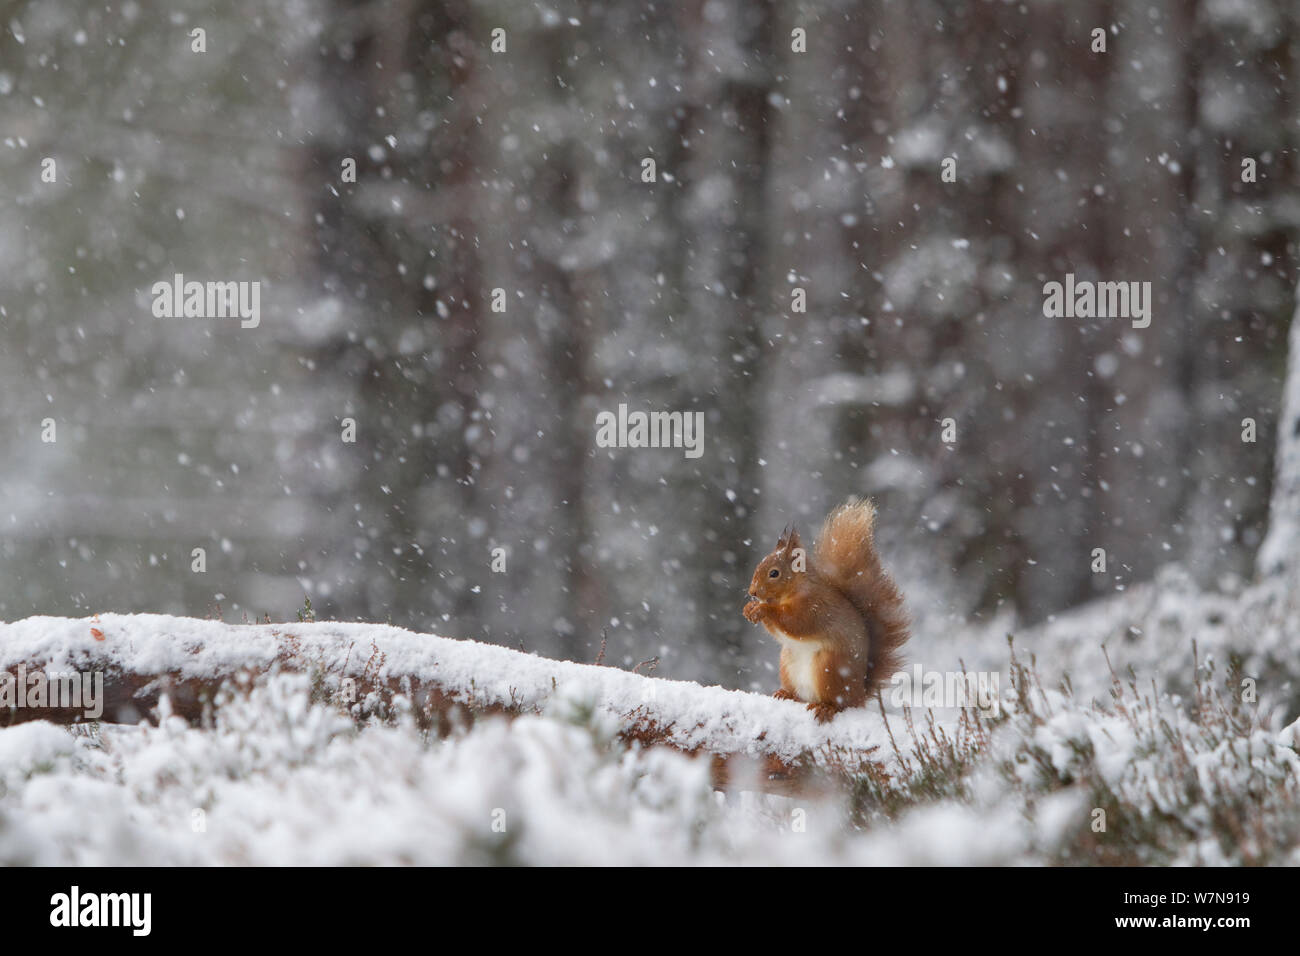 Red scoiattolo (Sciurus vulgaris) alimentazione in forte nevicata. Glenfeshie, Scozia, gennaio. Foto Stock